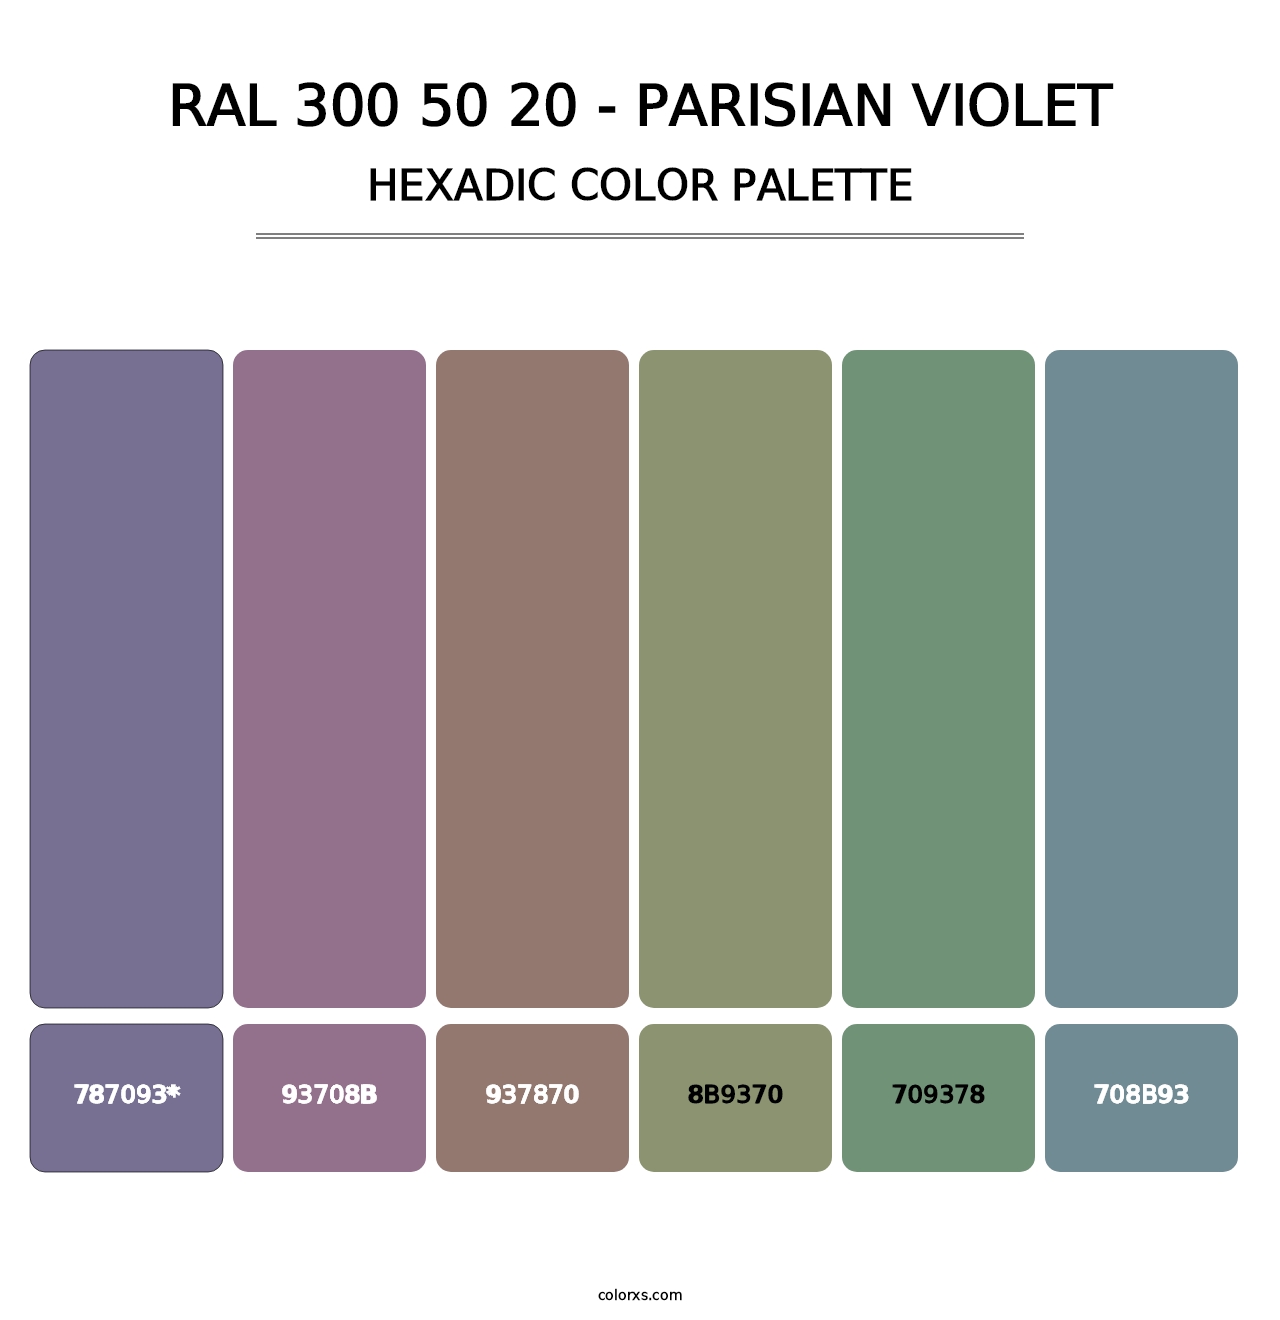 RAL 300 50 20 - Parisian Violet - Hexadic Color Palette